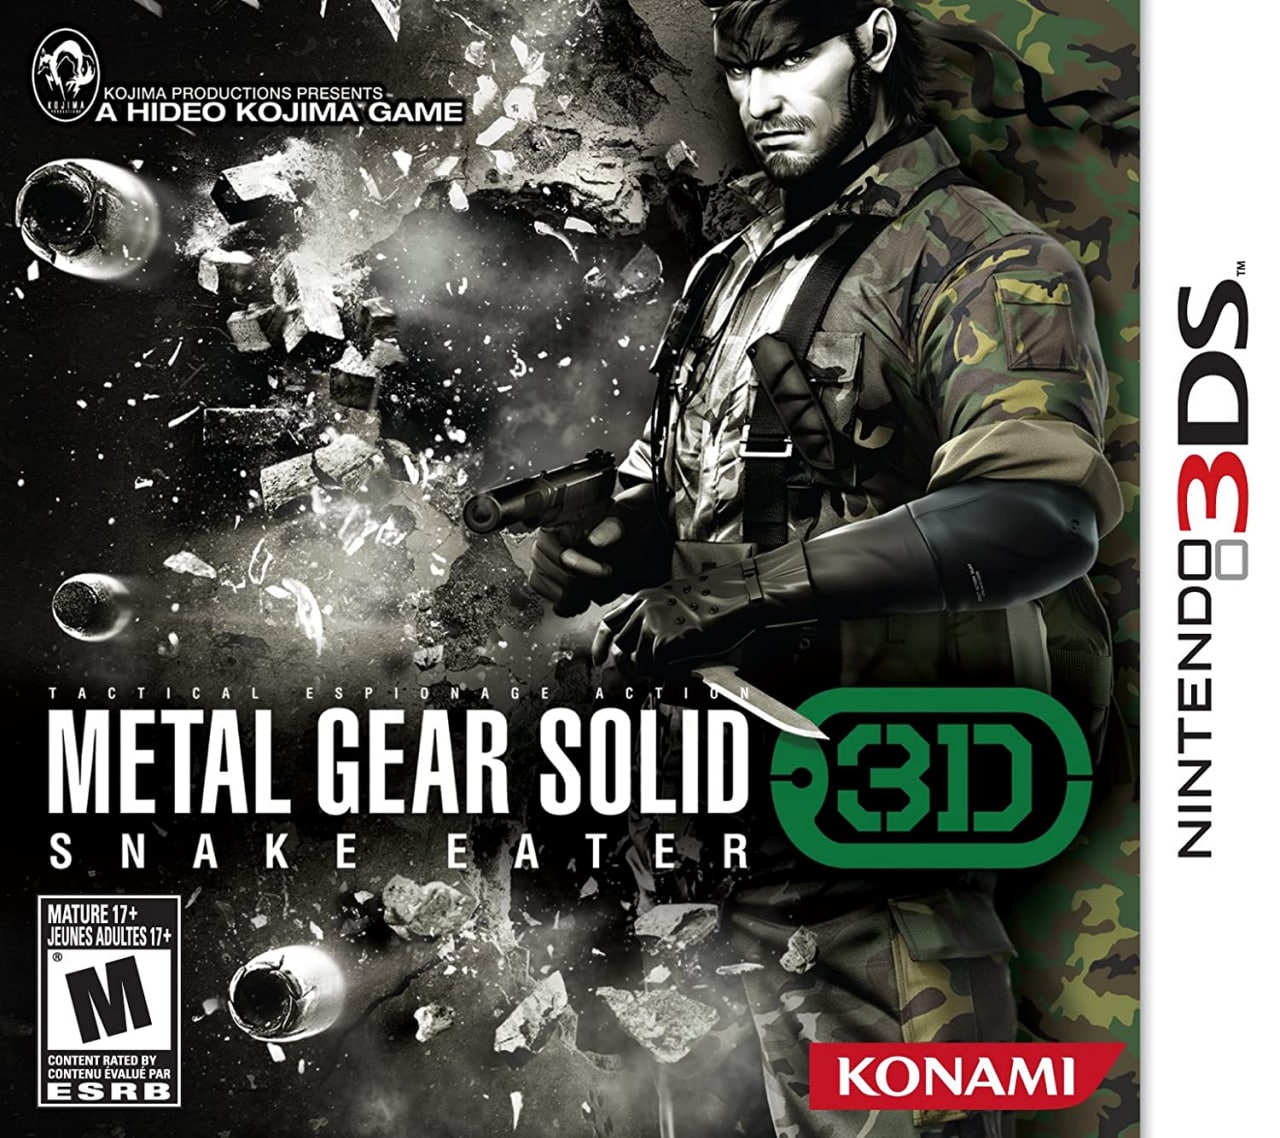 La versión física de Metal Gear Solid 3D se está volviendo muy costosa, GamersRD